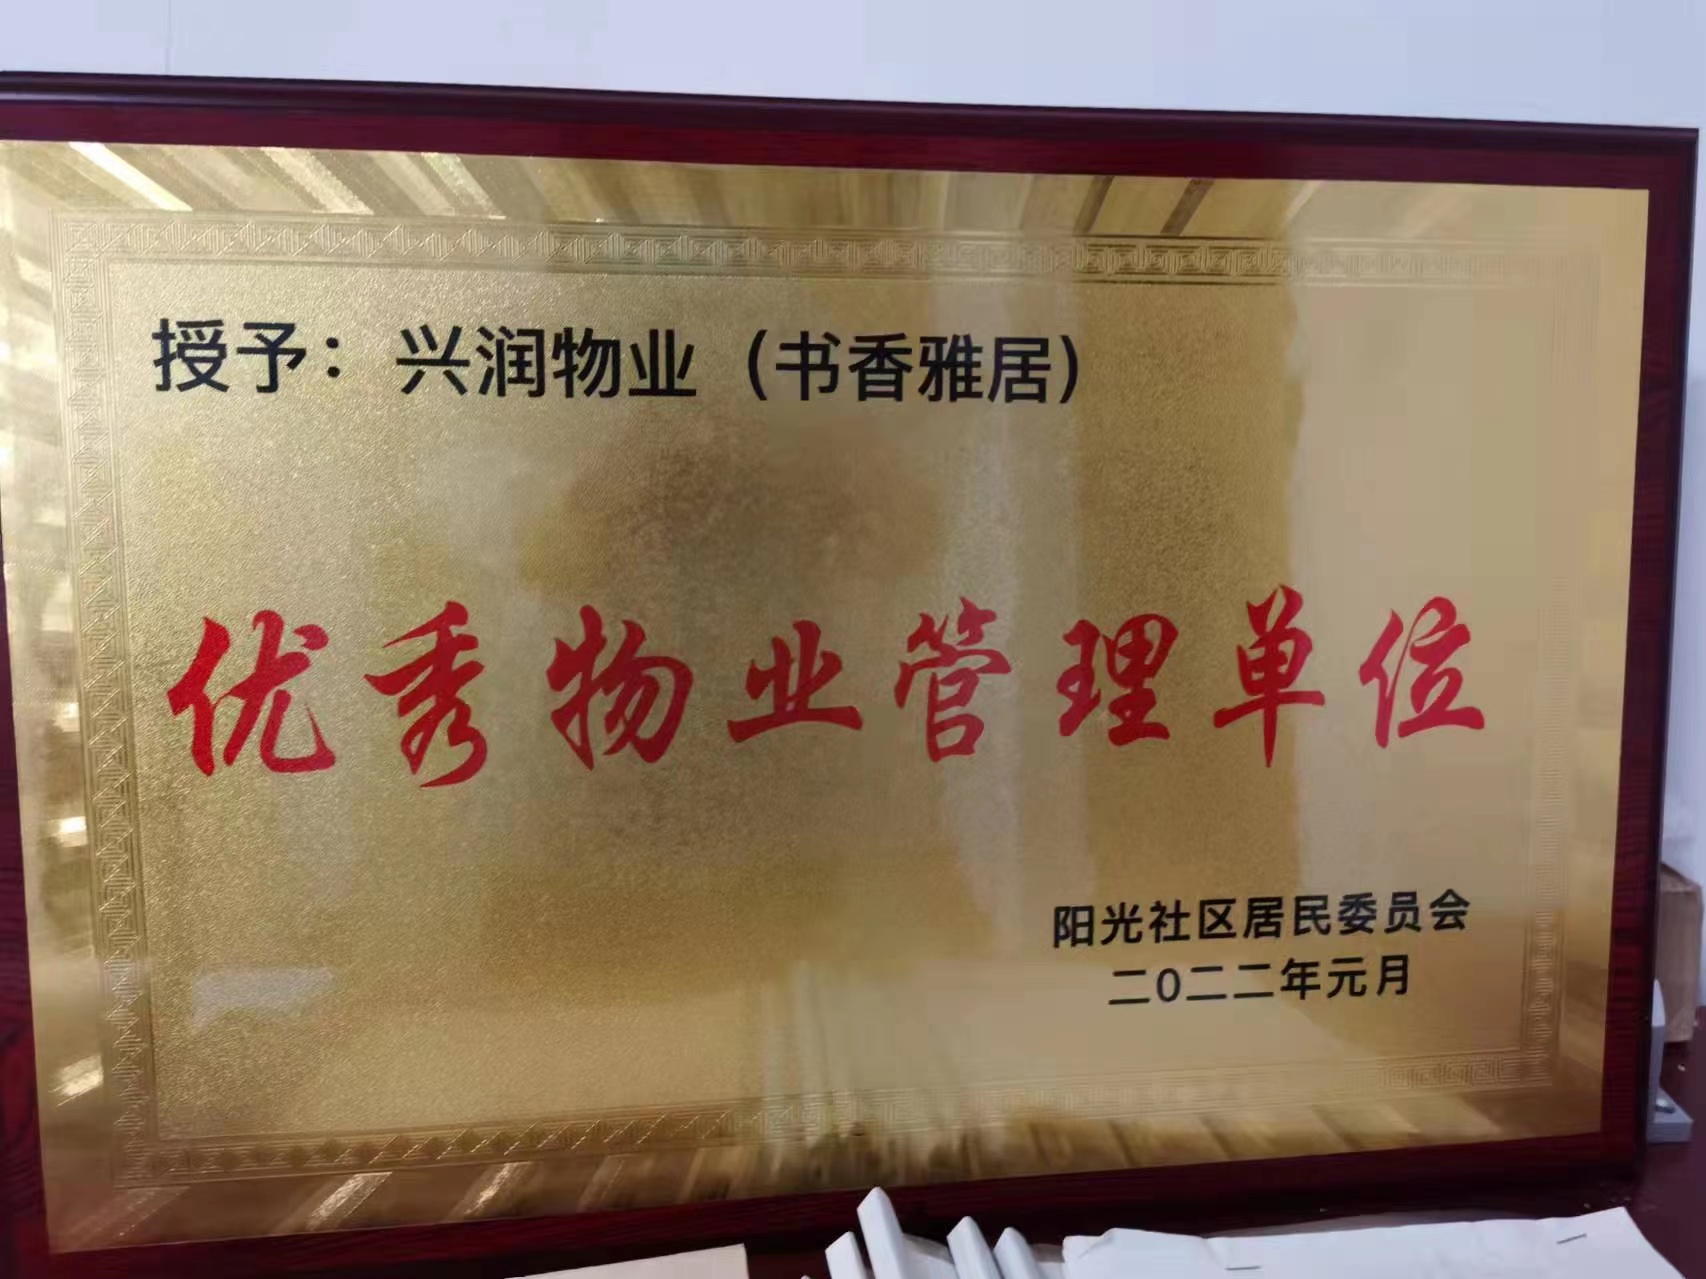 书香雅居管理处被评为优秀物业管理单位